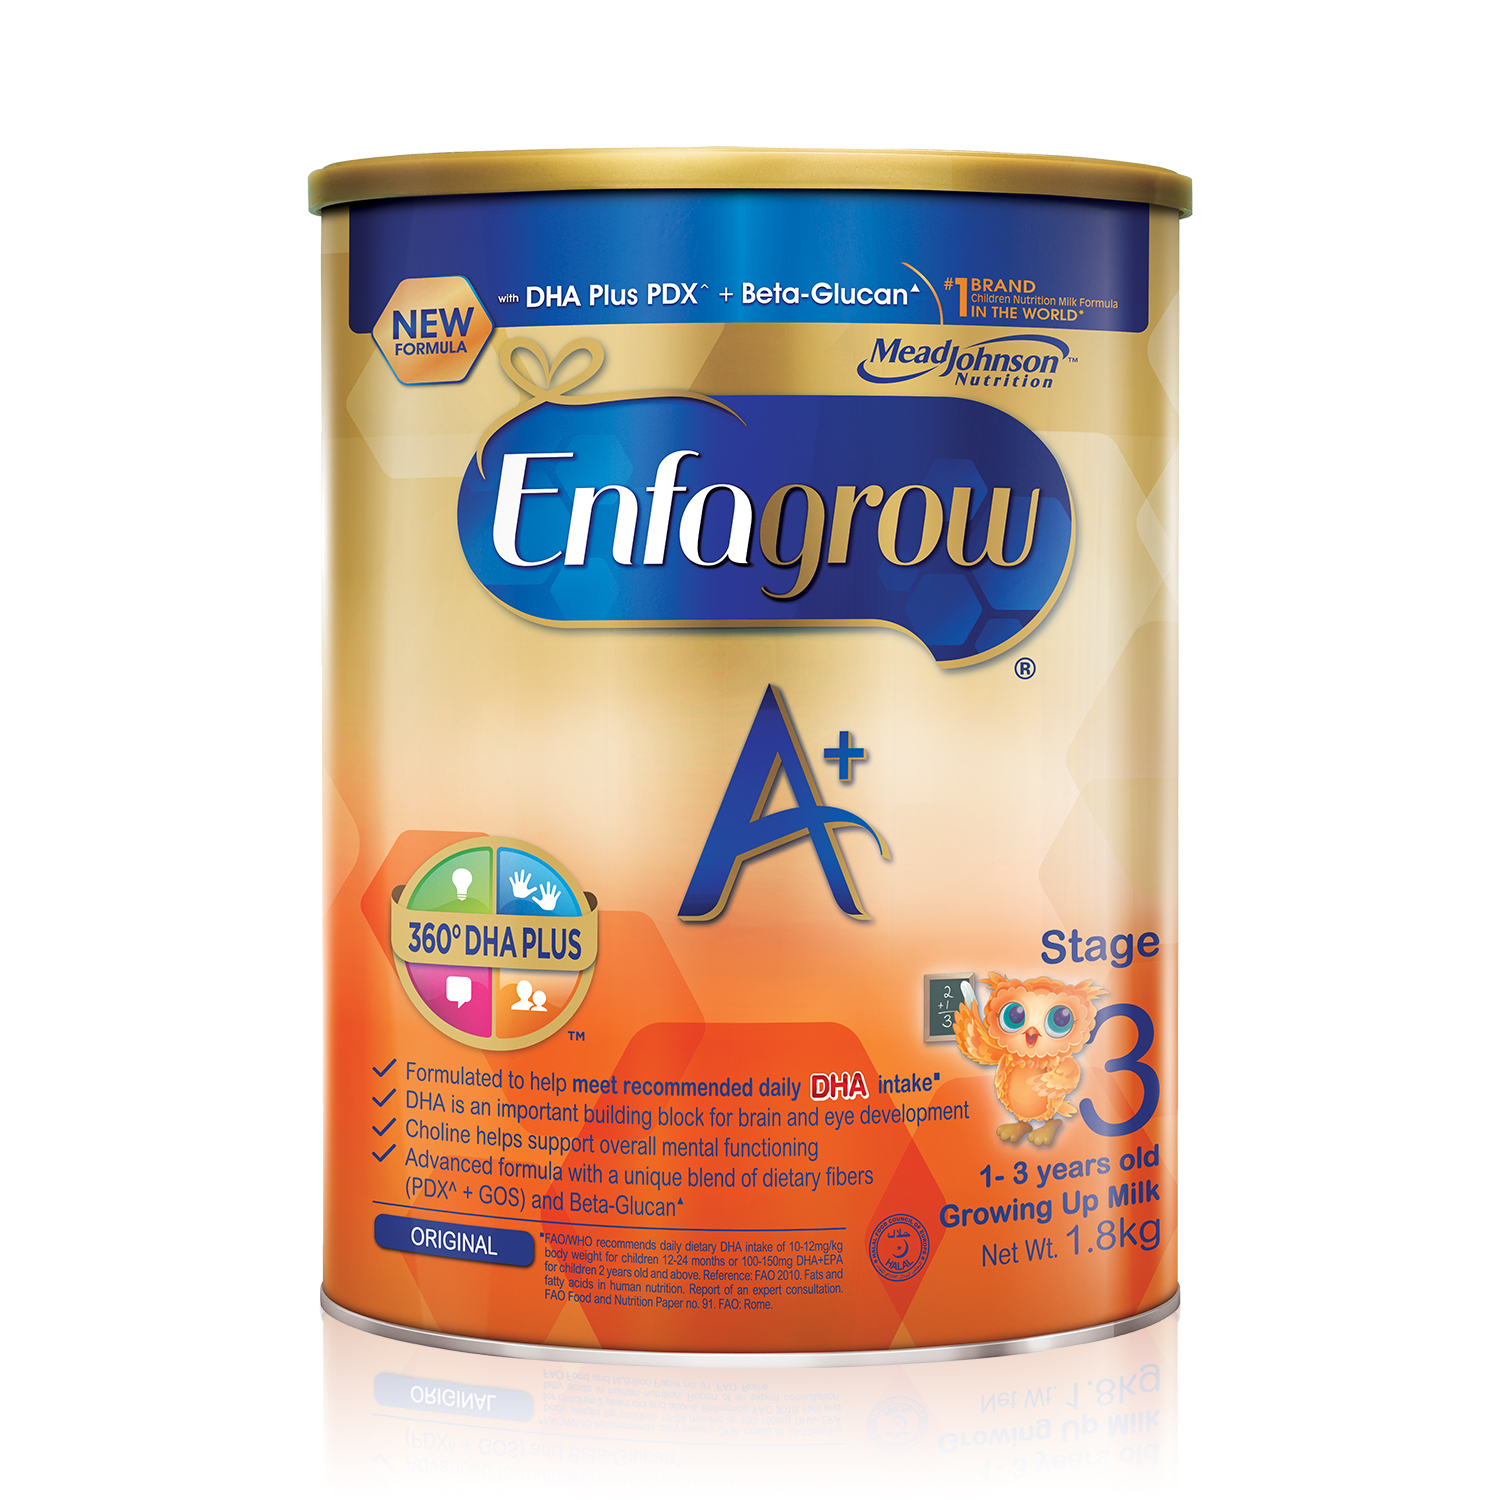 Enfagrow A+ Stage 3 Baby Formula Milk Powder 360DHA+ (1-3Y) 1.8kg